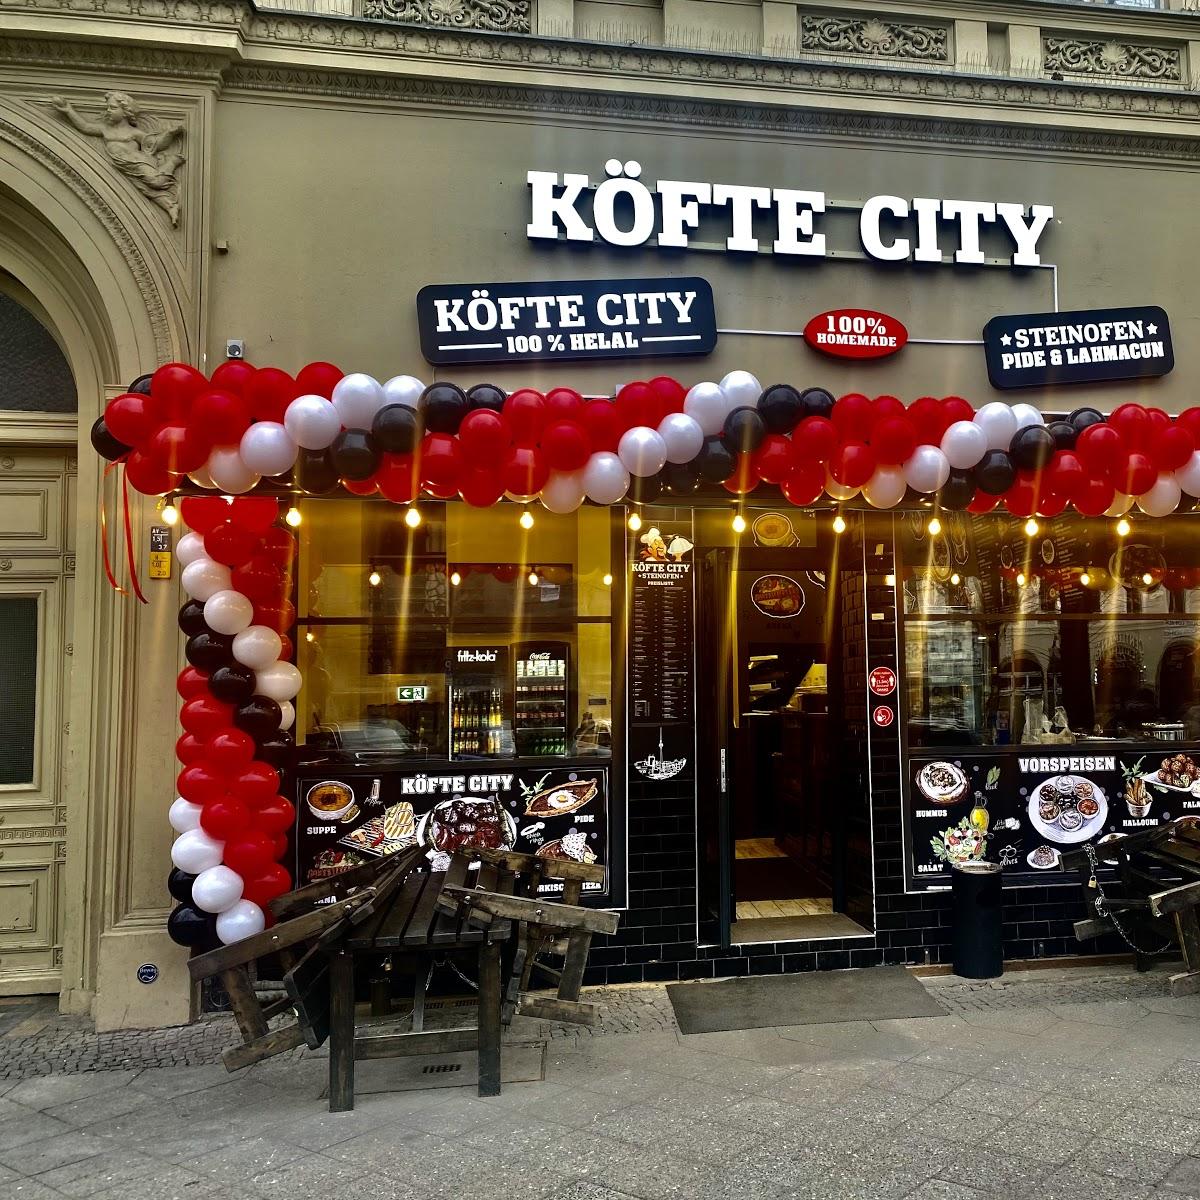 Restaurant "Köfte city" in Berlin